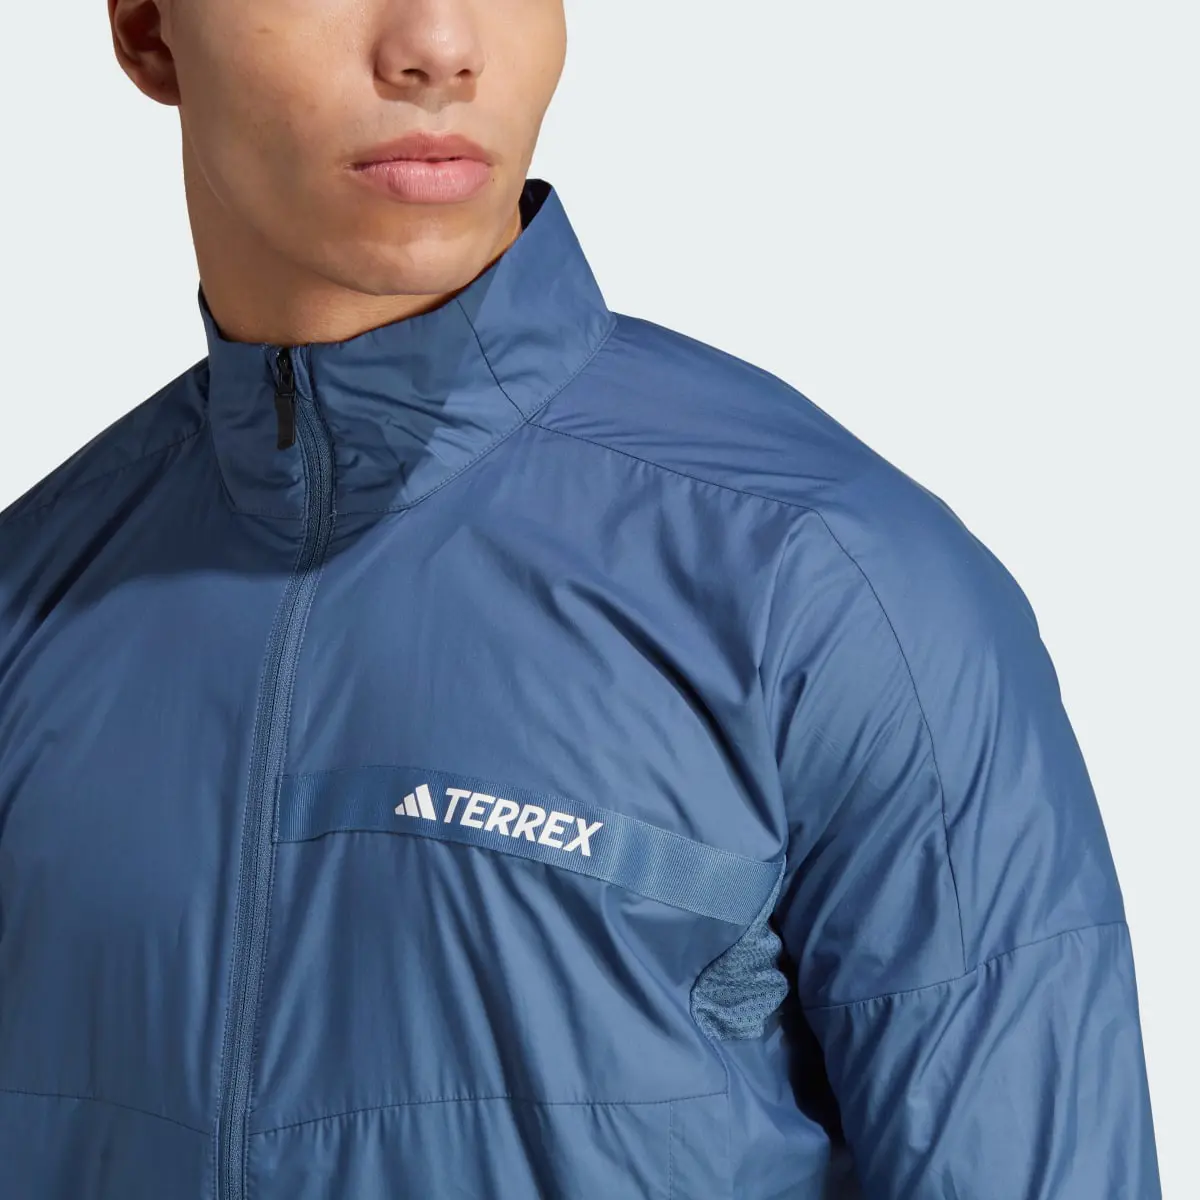 Adidas Terrex Multi Wind Jacket. 3